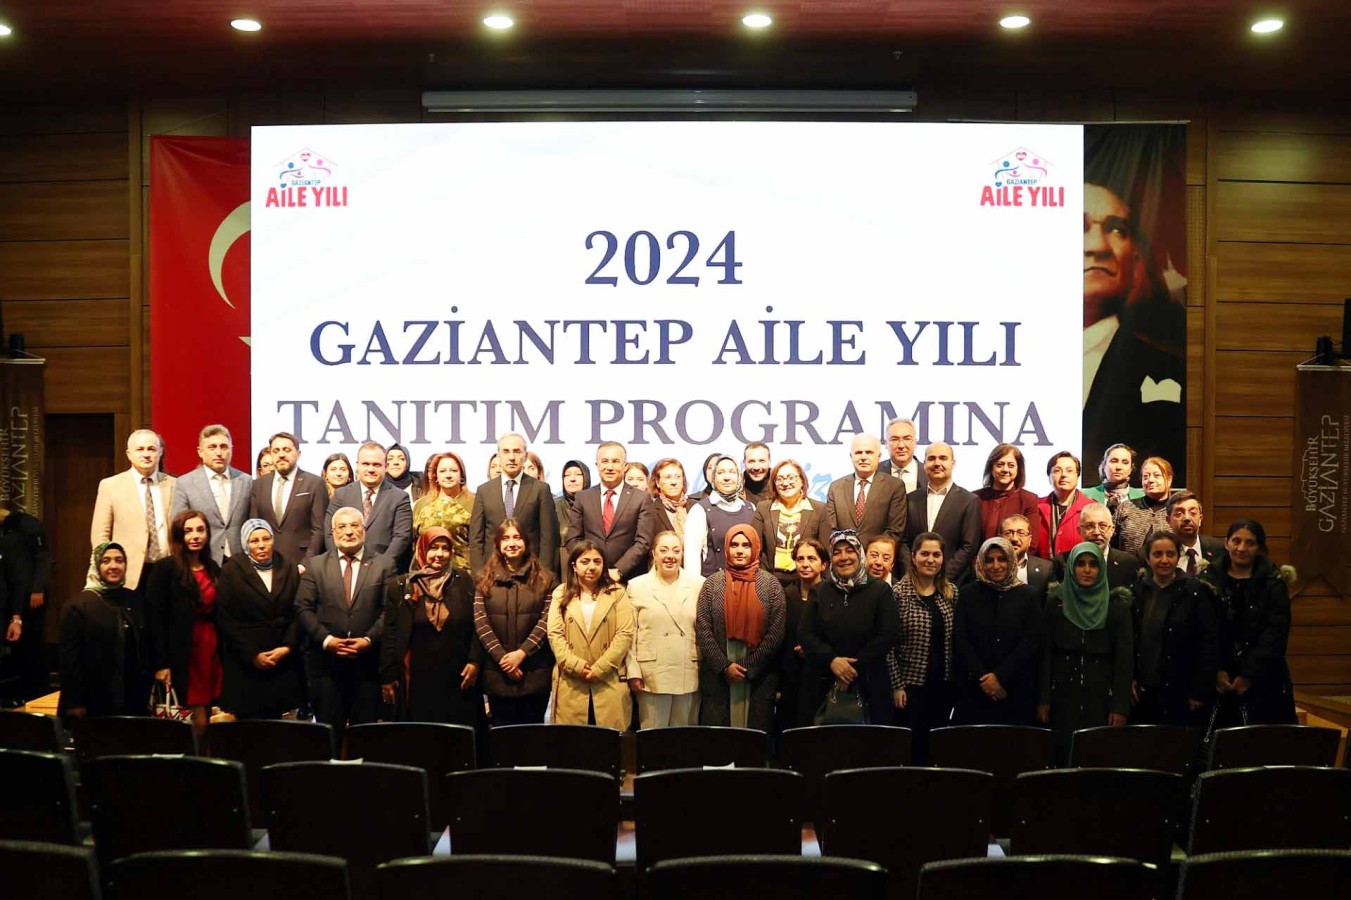 2024 Gaziantep için Aile Yılı oldu;